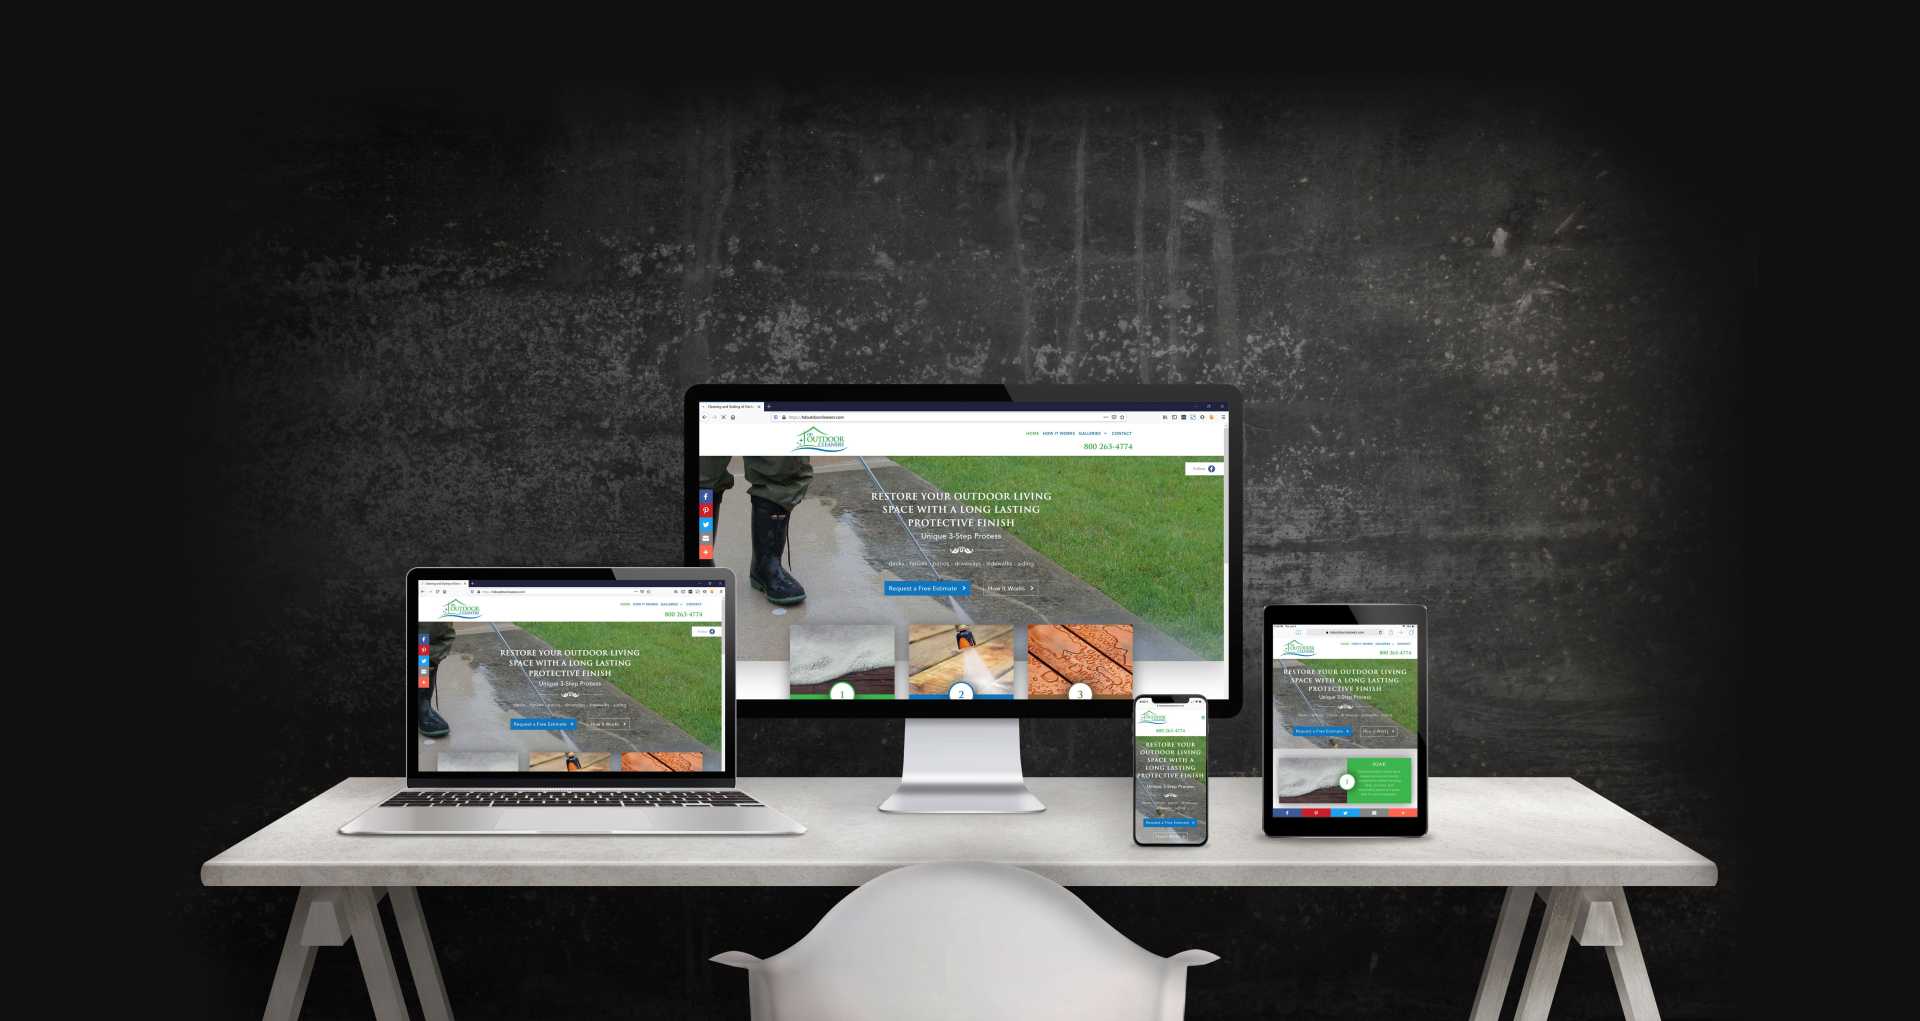 Mockup of the HDOutdoor Cleaners website showing desktop, laptop, iPad and iPhone displays.